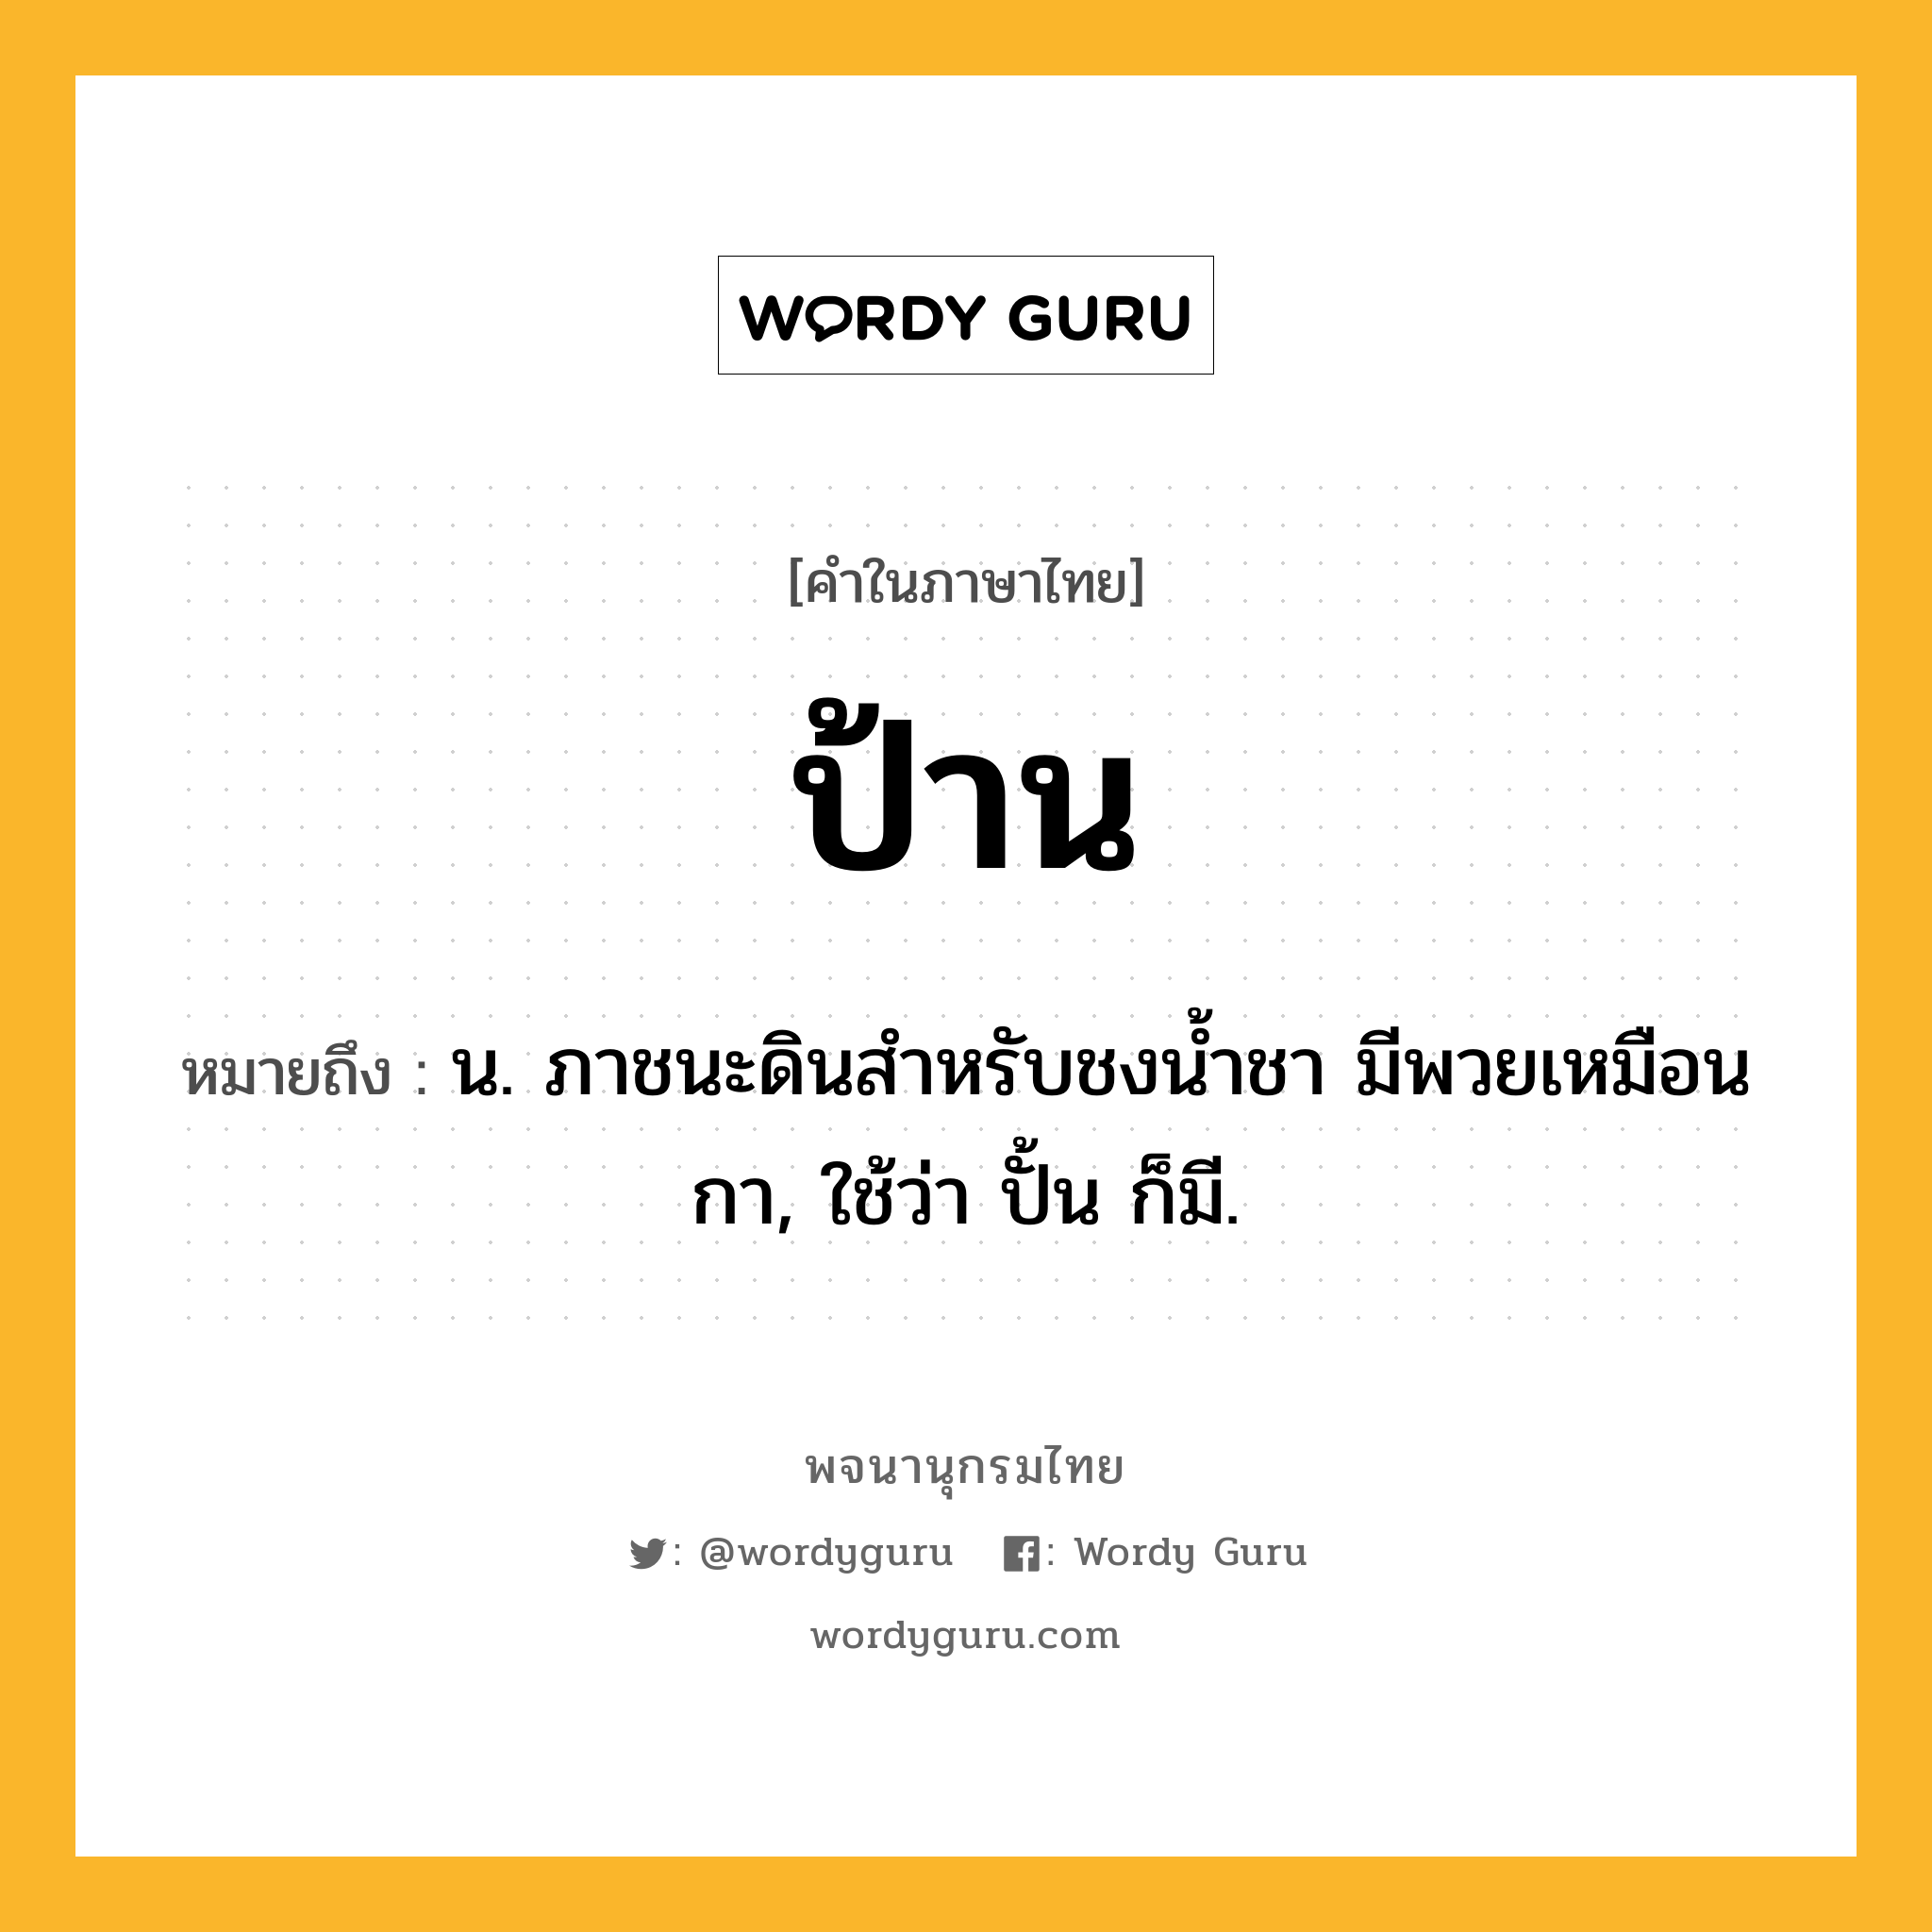 ป้าน หมายถึงอะไร?, คำในภาษาไทย ป้าน หมายถึง น. ภาชนะดินสําหรับชงนํ้าชา มีพวยเหมือนกา, ใช้ว่า ปั้น ก็มี.